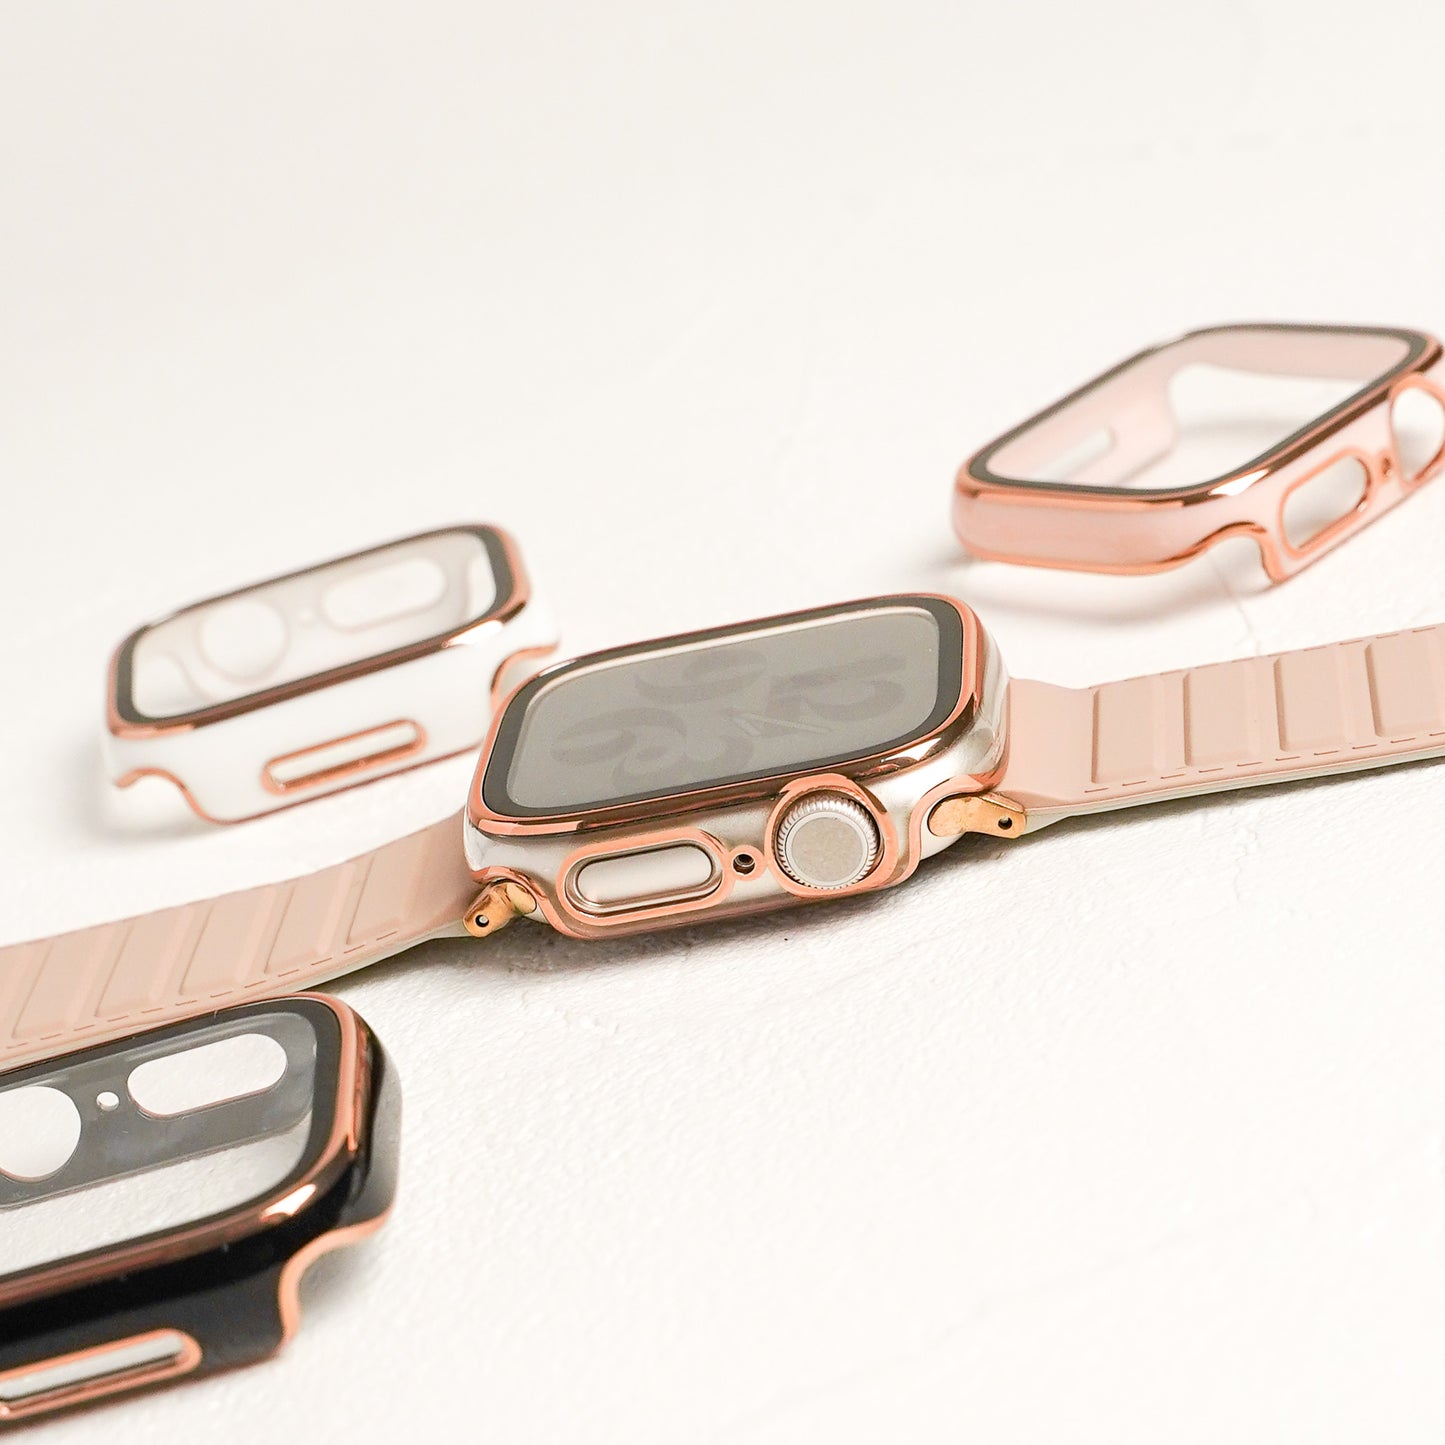 【NEW】ローズゴールドライン 全面 保護カバー ハードタイプ アップルウォッチ ケース Apple Watch